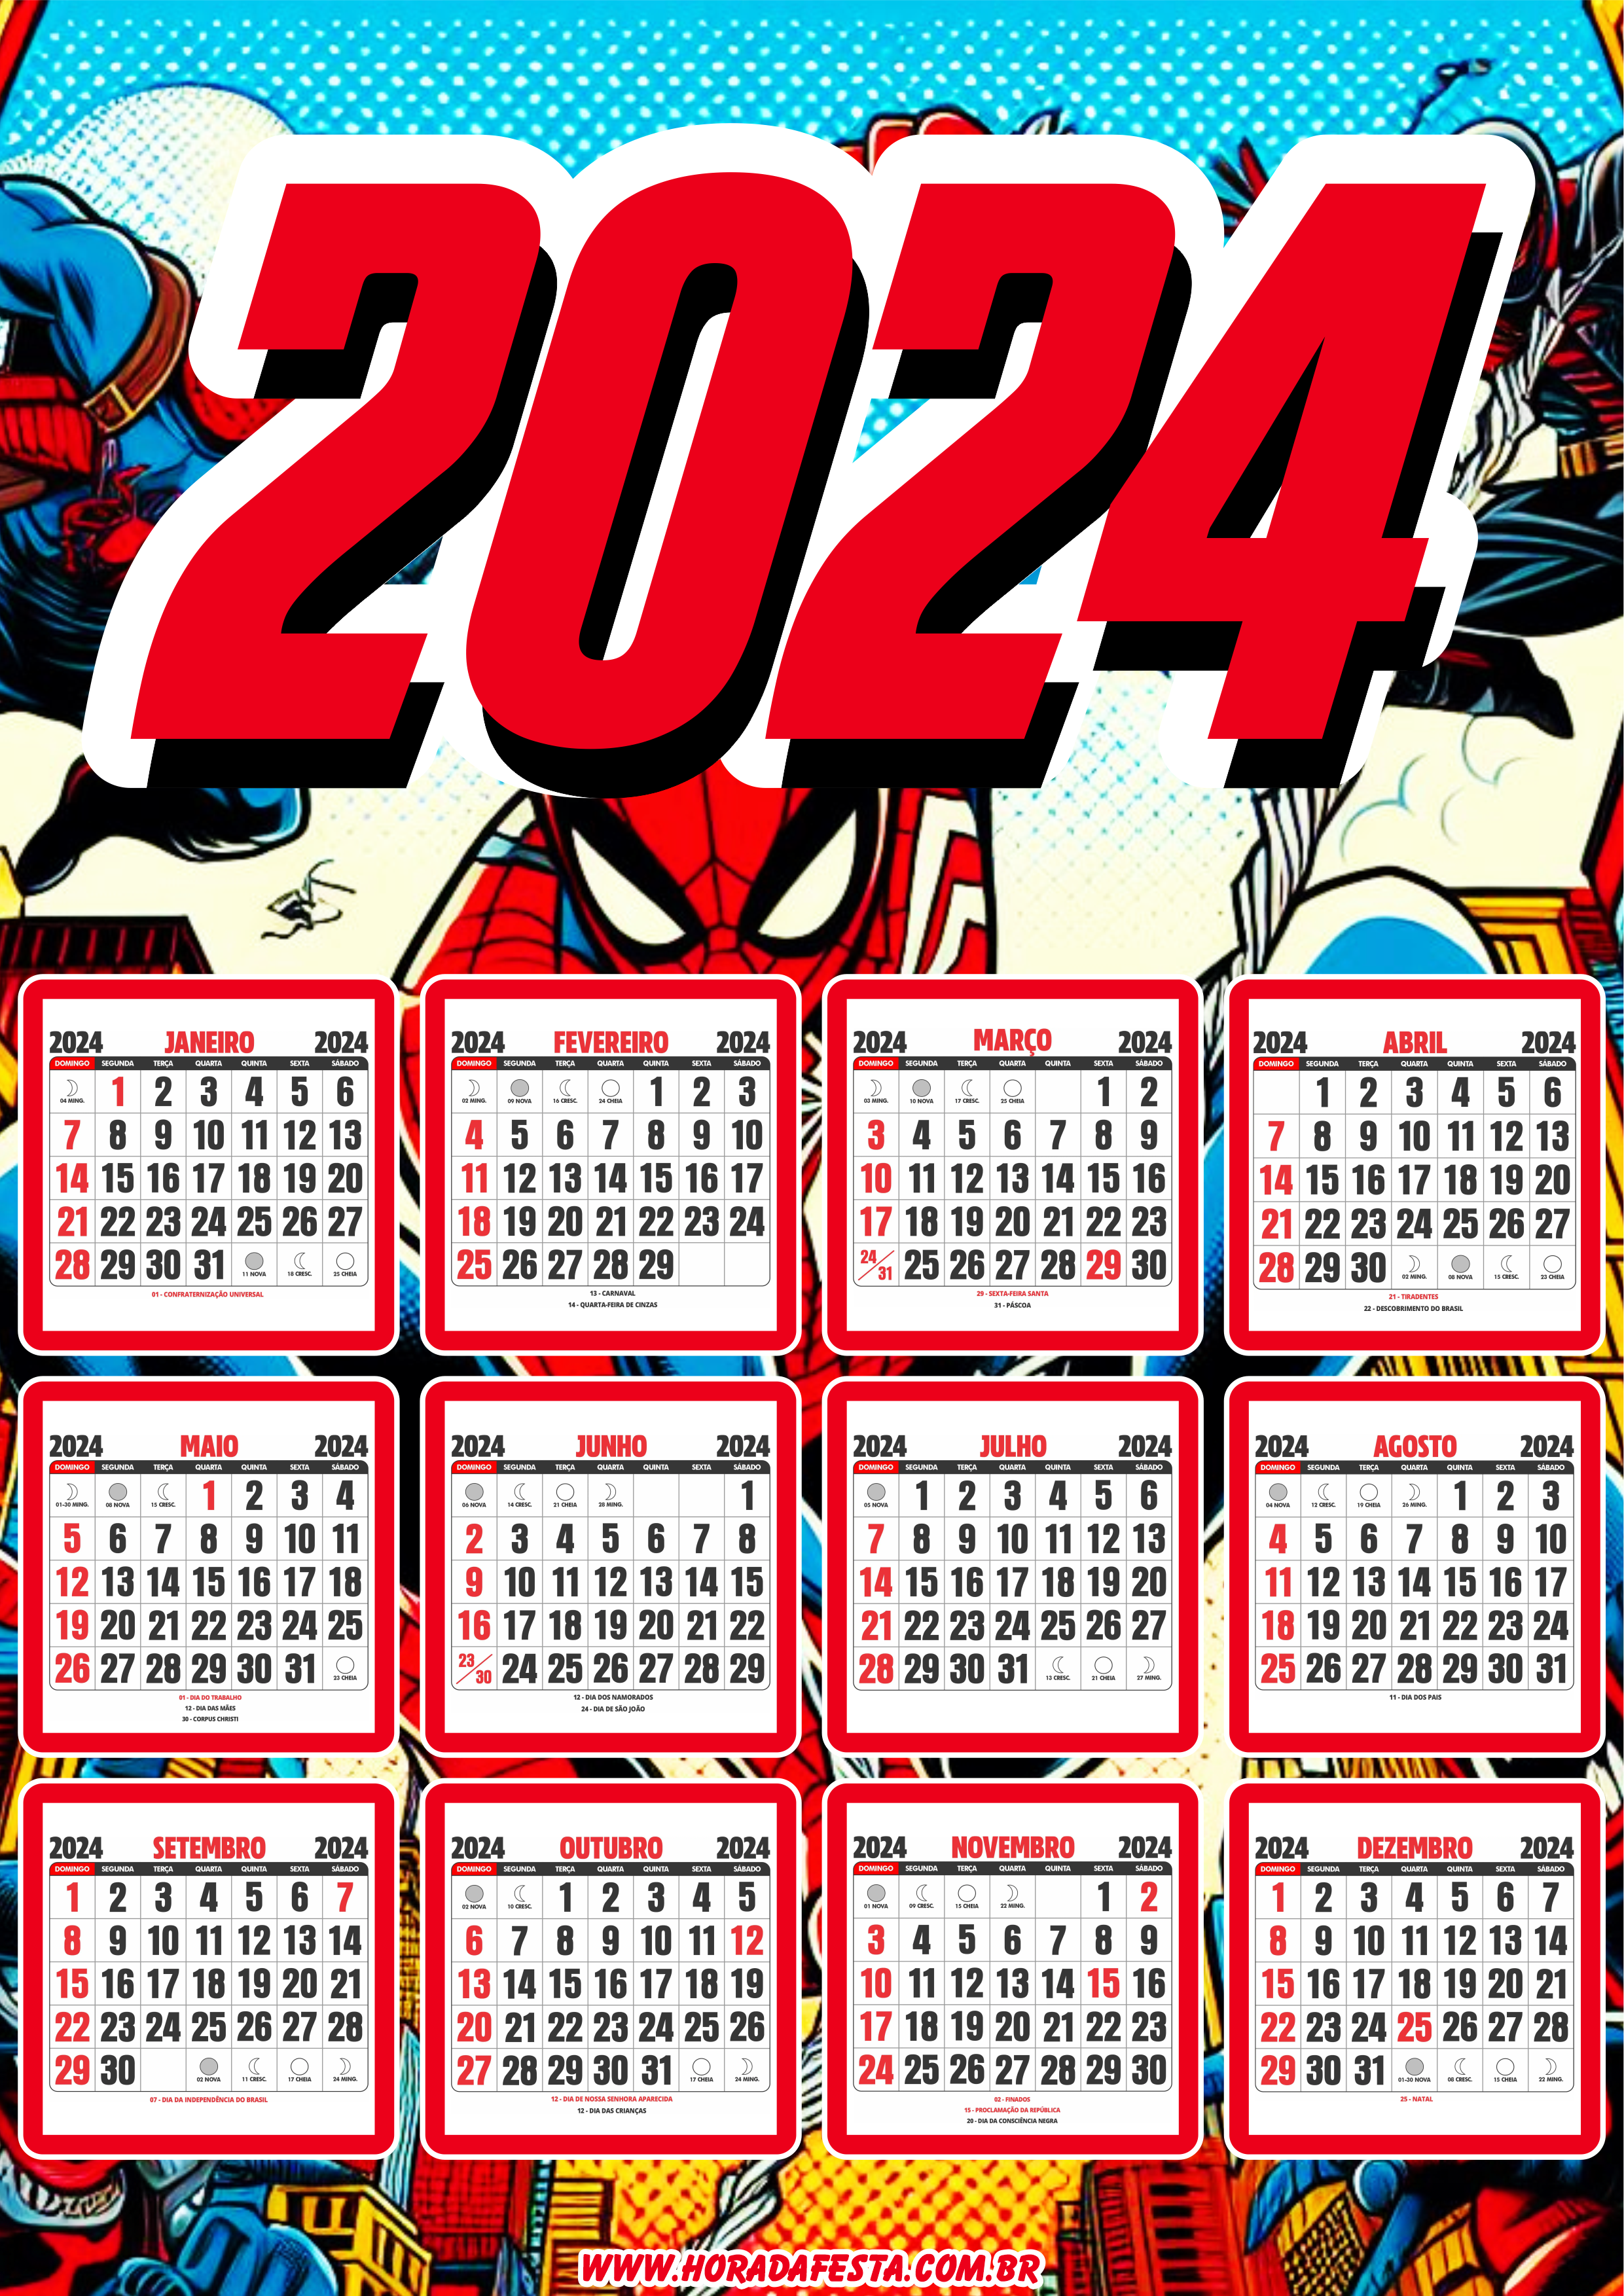 Calendário 2024 personalizado Marvel Super Herói Homem Aranha artes gráficas design artigos para festa png